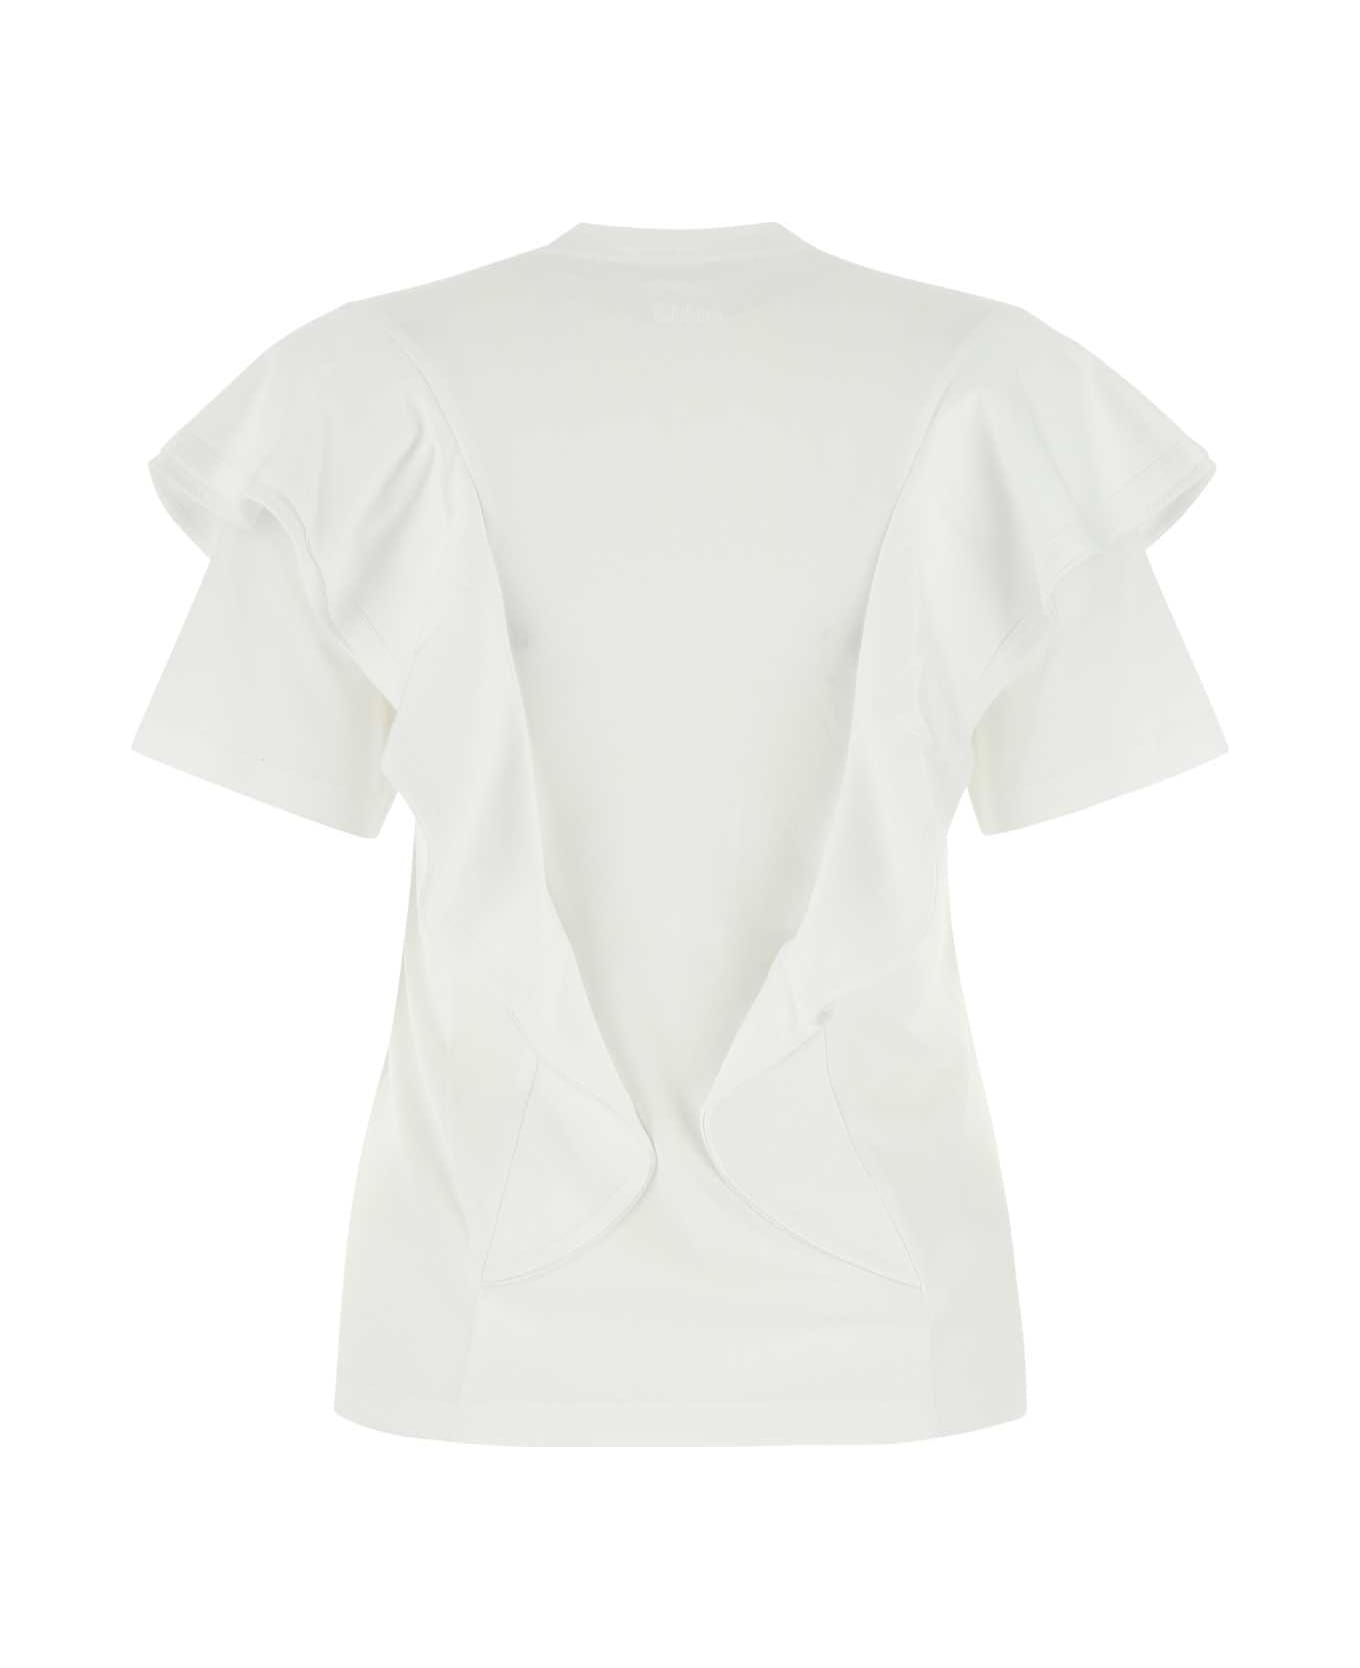 Chloé White Cotton T-shirt - 101 Tシャツ